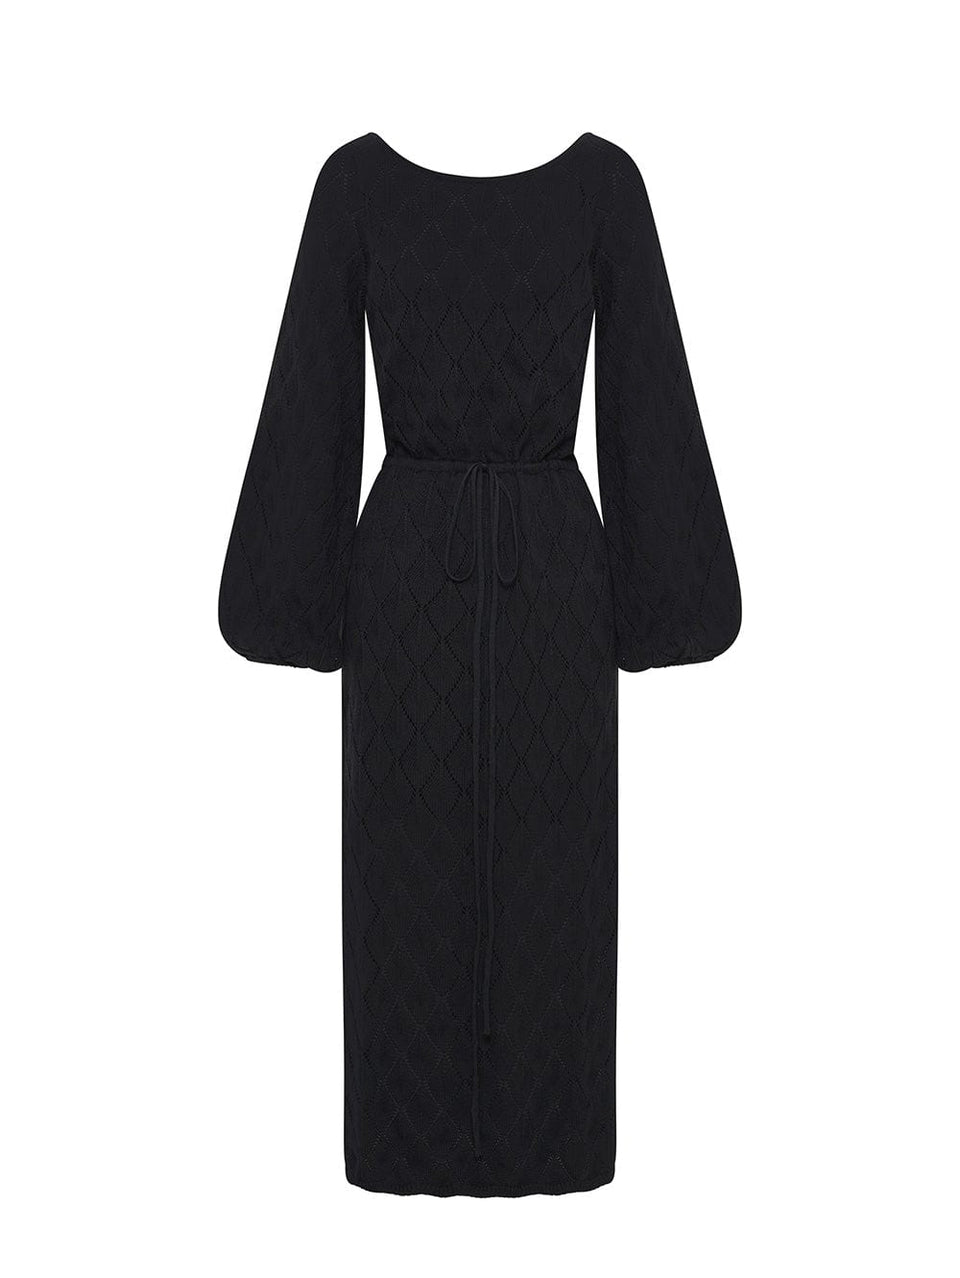 Claudia Knit Dress - Black